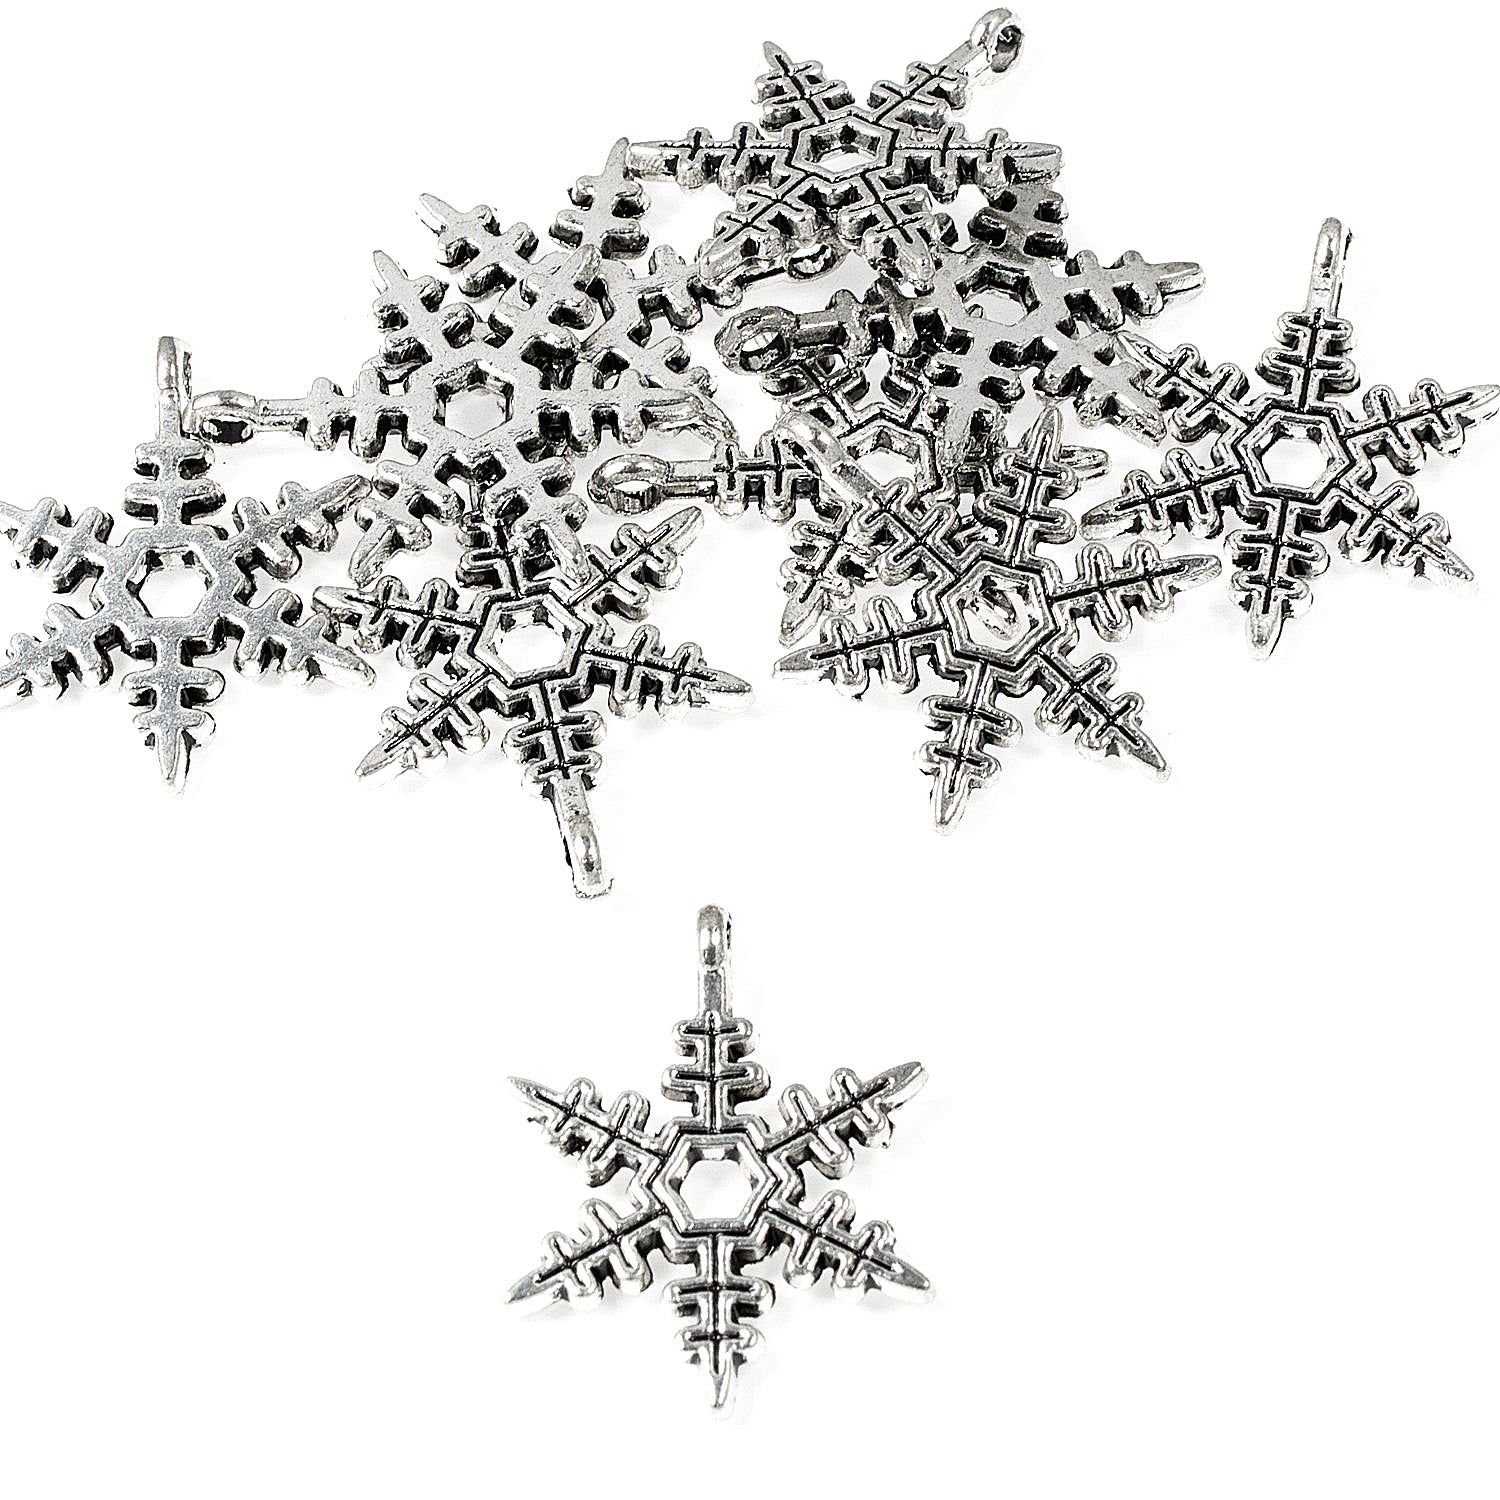 25 Silver Snowflake Beads, Metal Christmas Holiday Bead 10mm